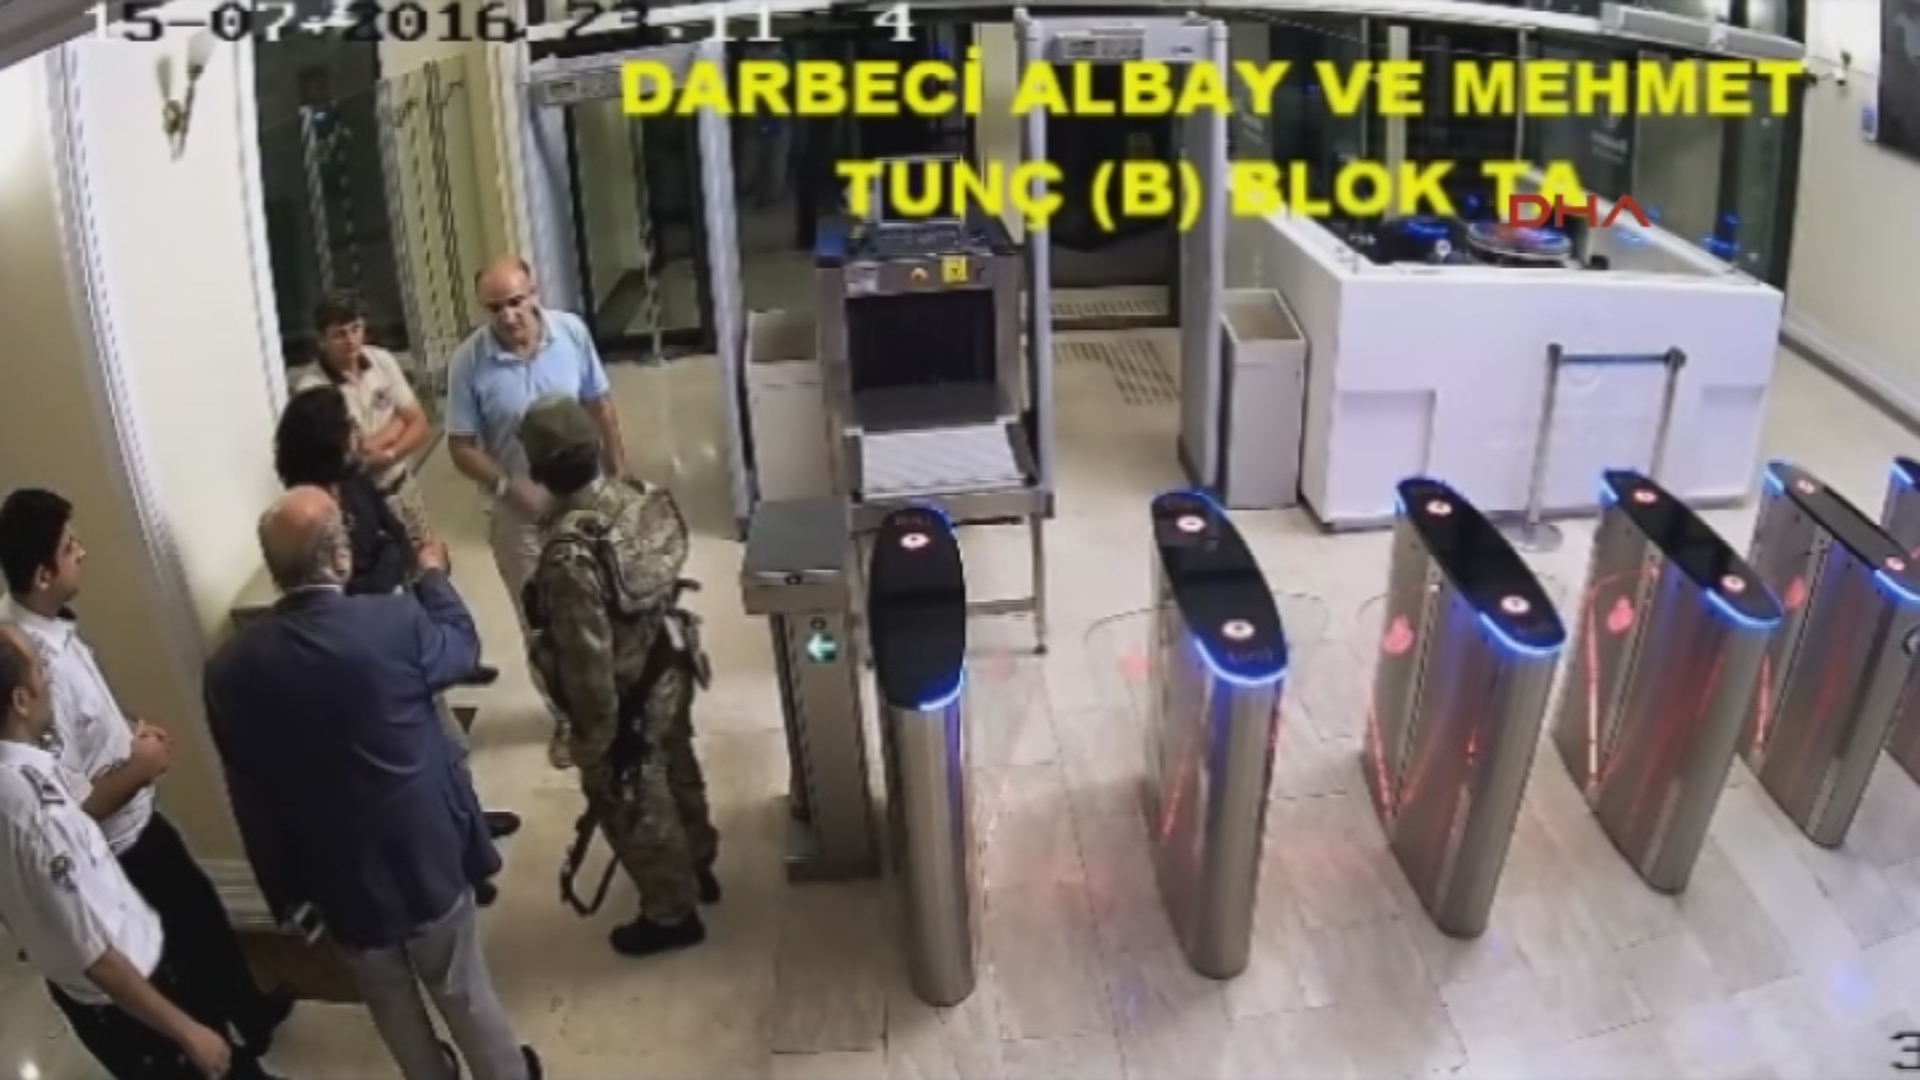 İBB Sivil Savunma Sekreteri Mehmet Tunç Darbeci askerleri kapıda karşıladı.